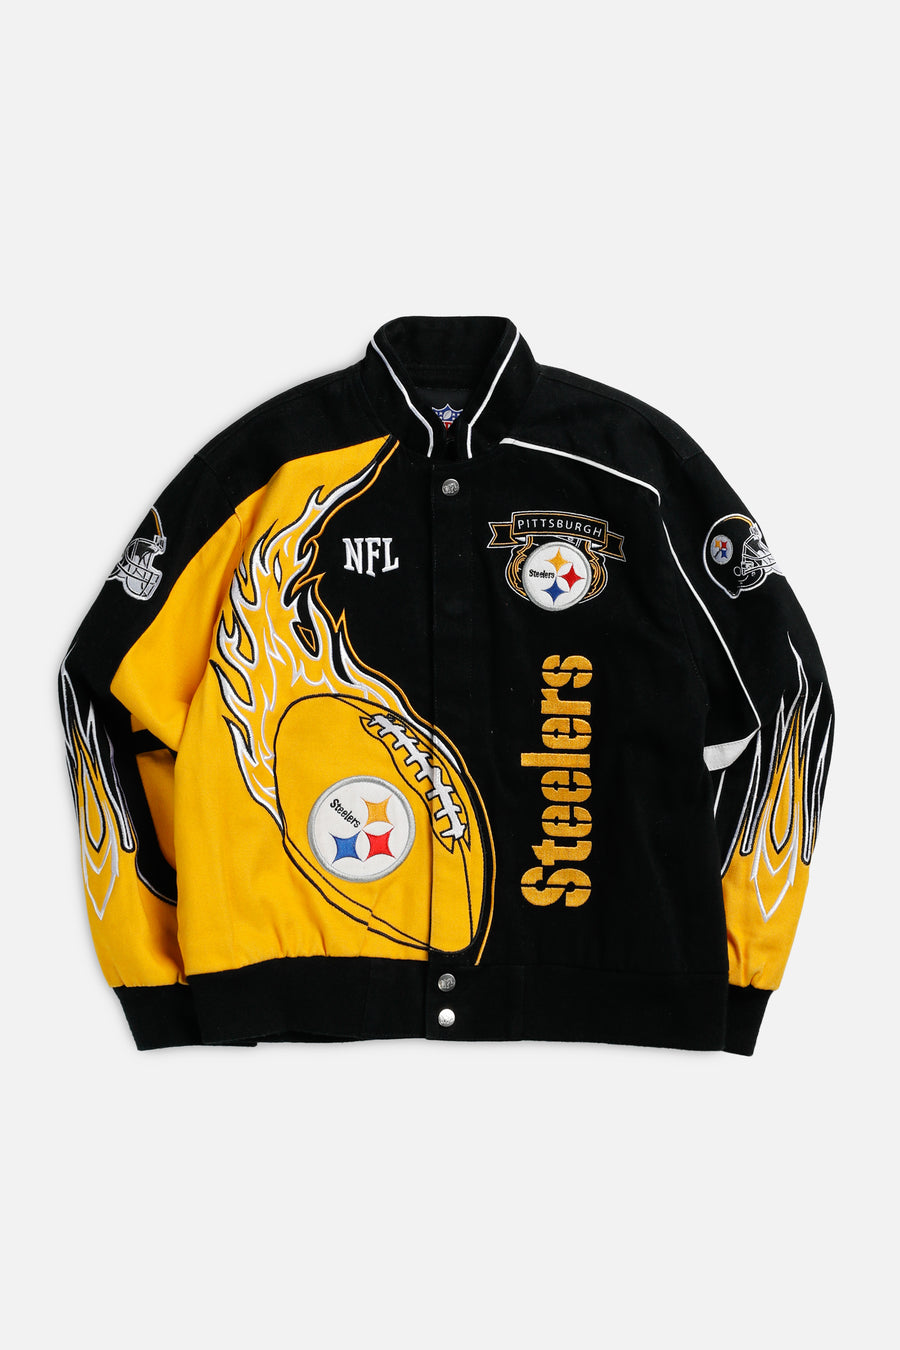 Vintage Pittsburgh Steelers NFL Jacket - Women's M